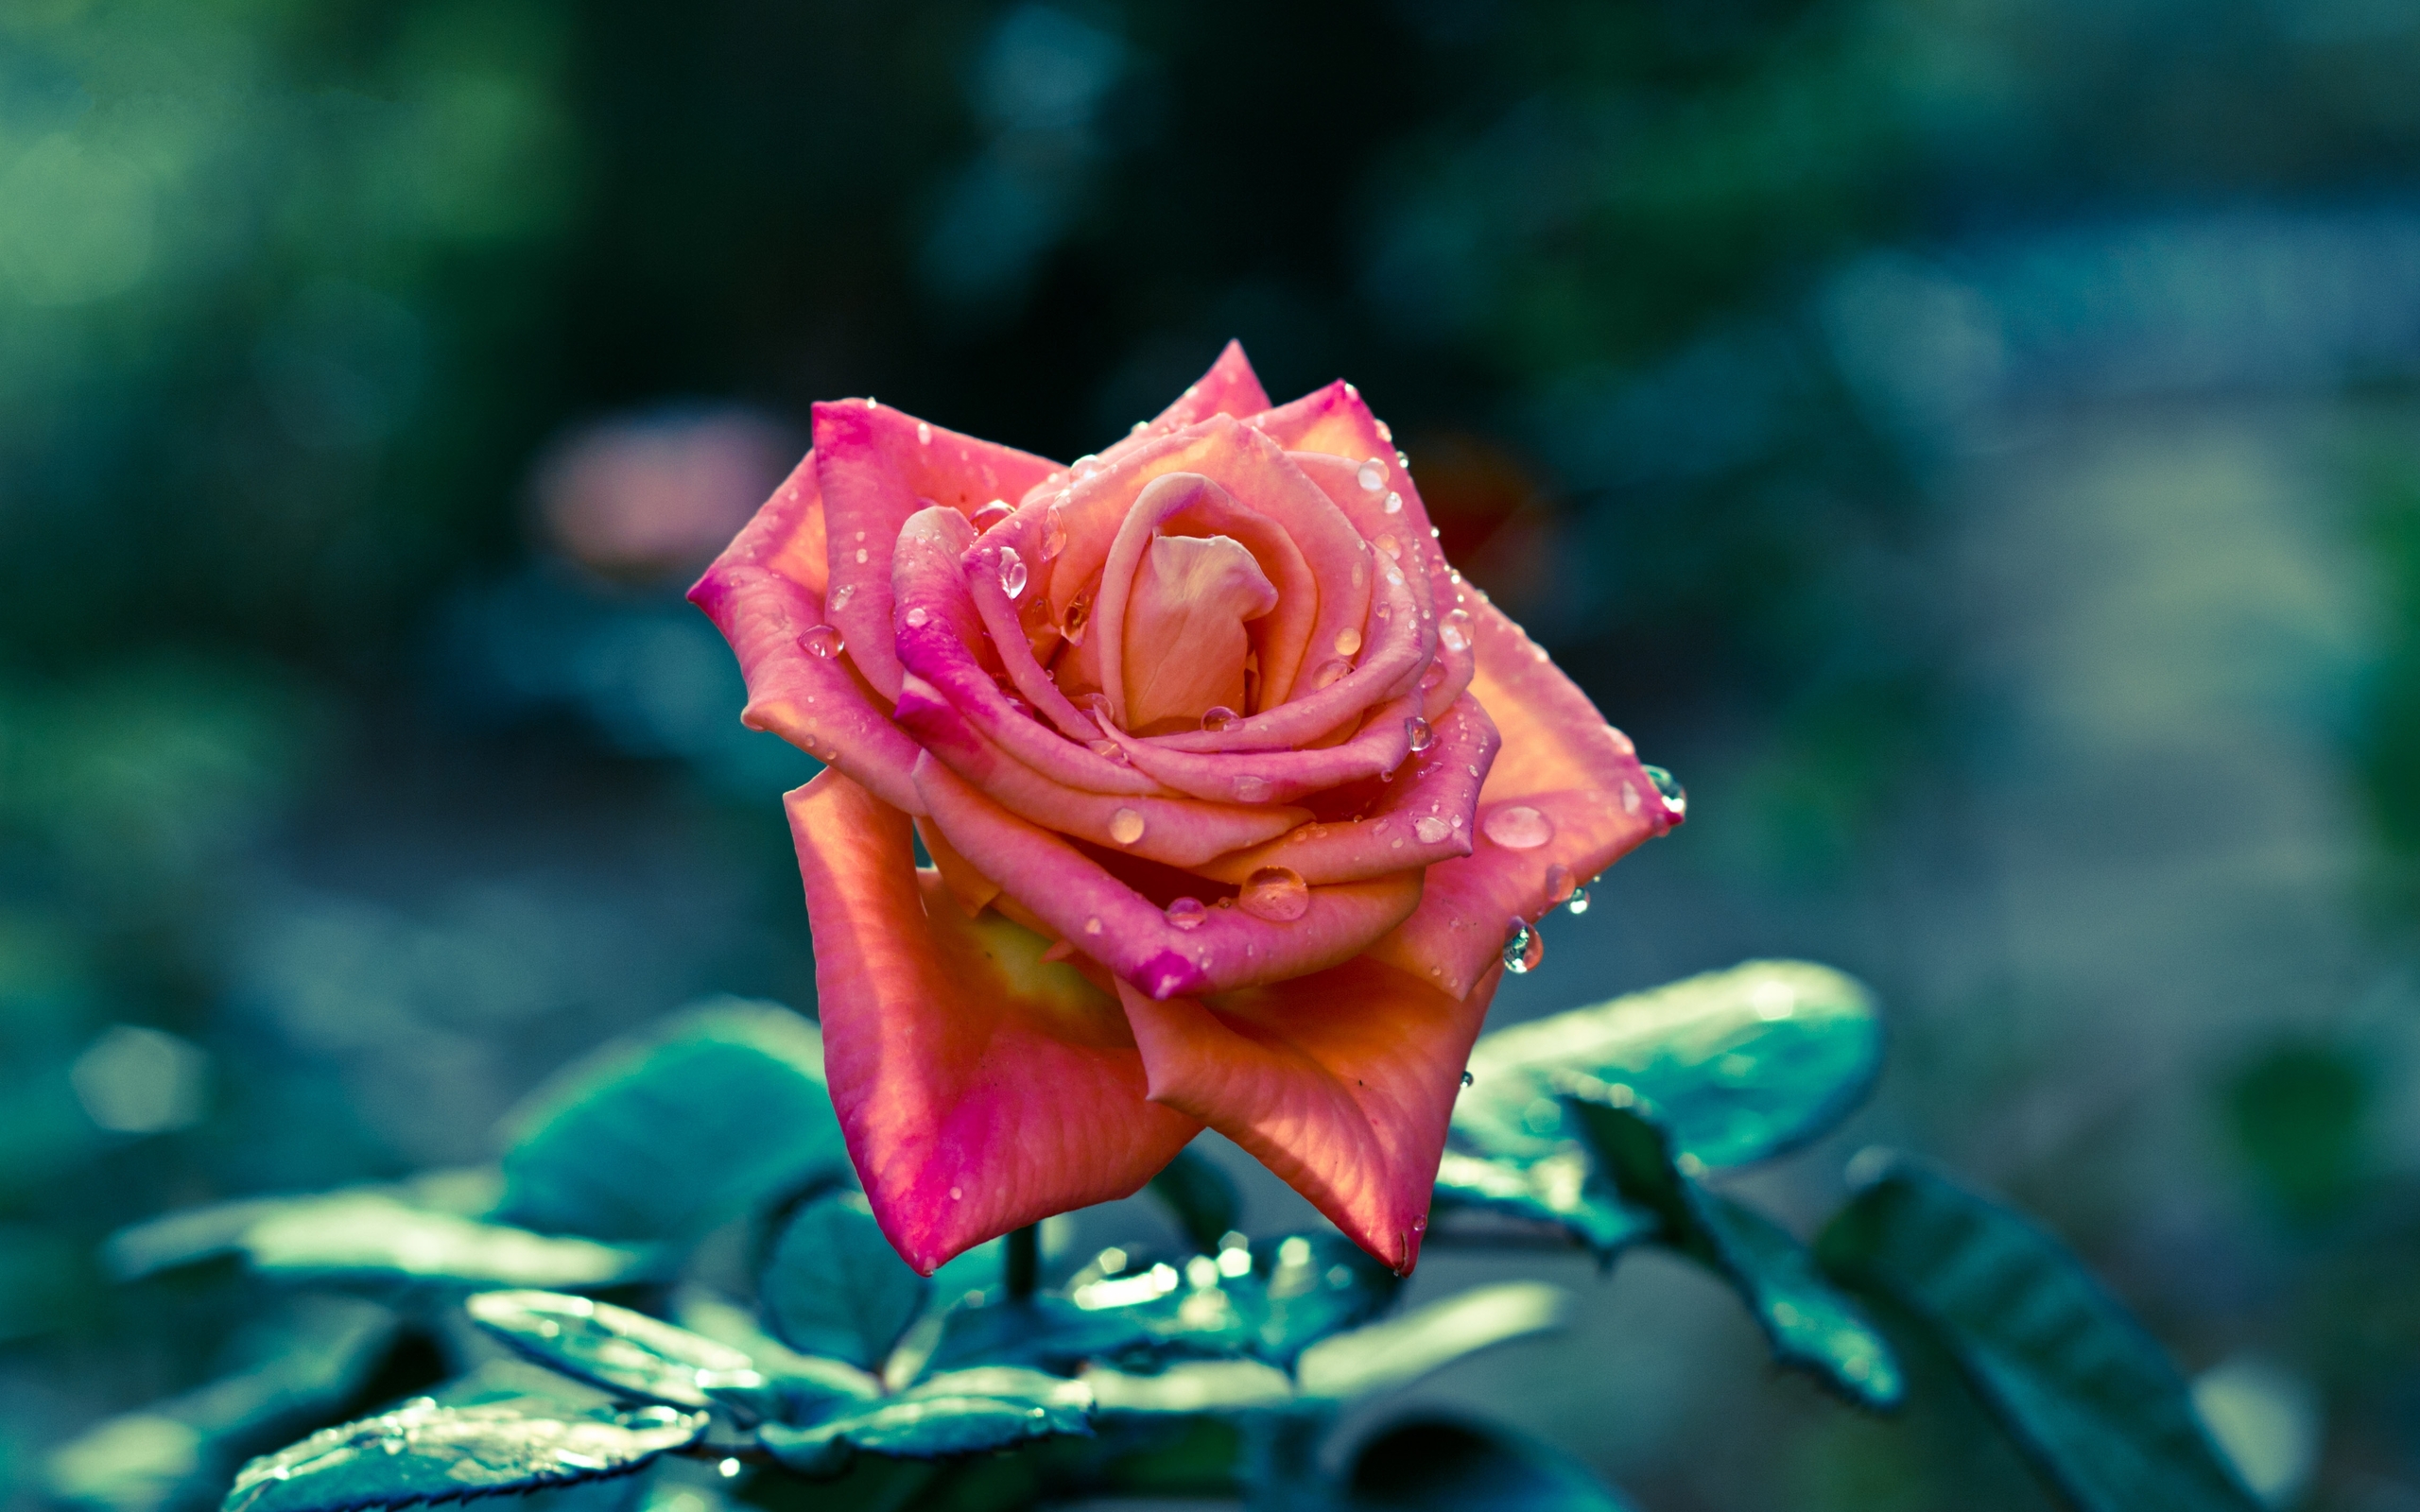 208088 Salvapantallas y fondos de pantalla Rosa en tu teléfono. Descarga imágenes de tierra/naturaleza, flor, flores gratis